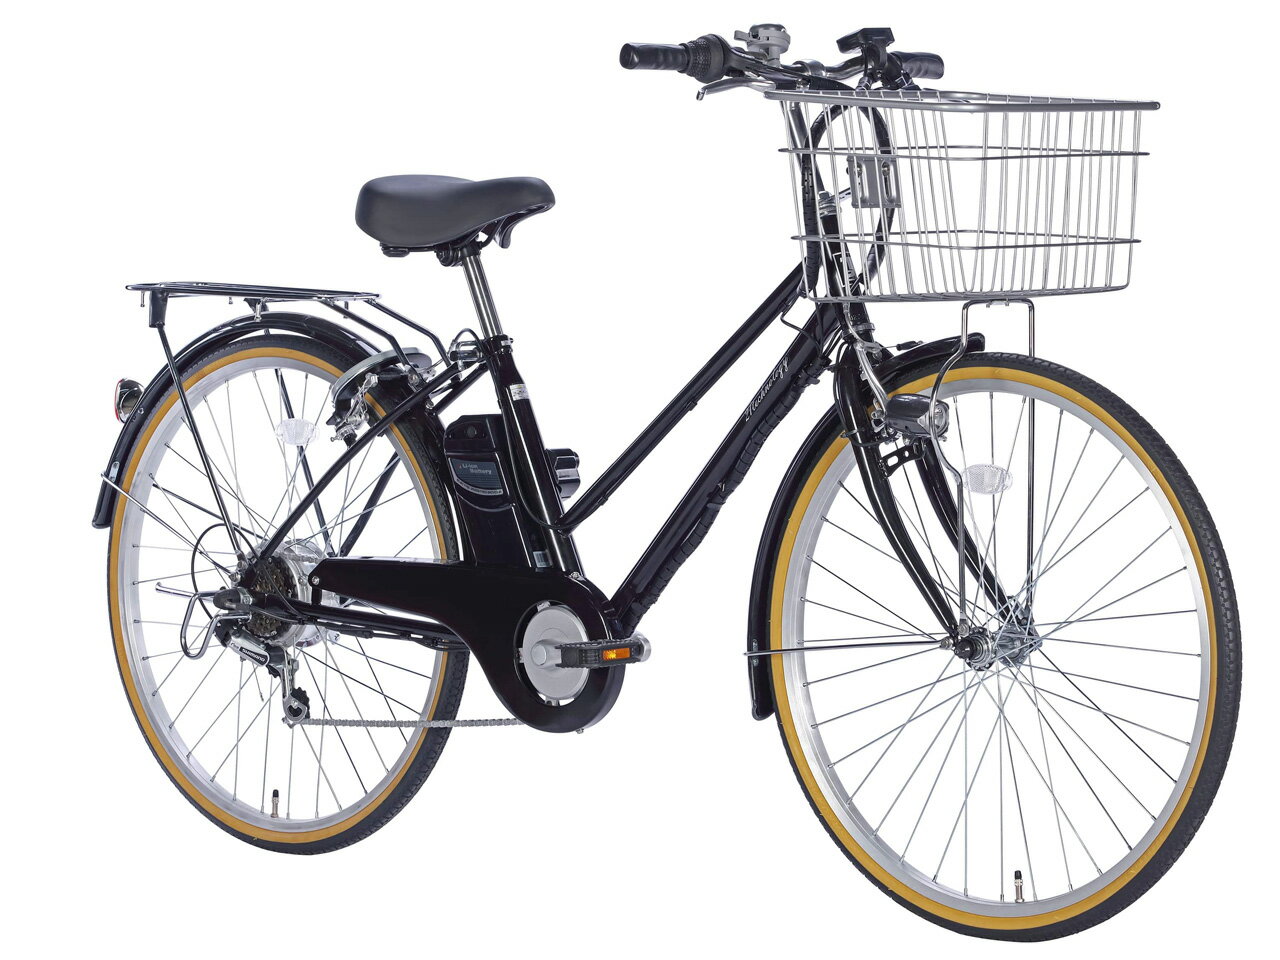 21テクノロジー 電動アシスト自転車26インチ シマノ製6段変速 軽量設計DACT266 カラー3色【自転車】